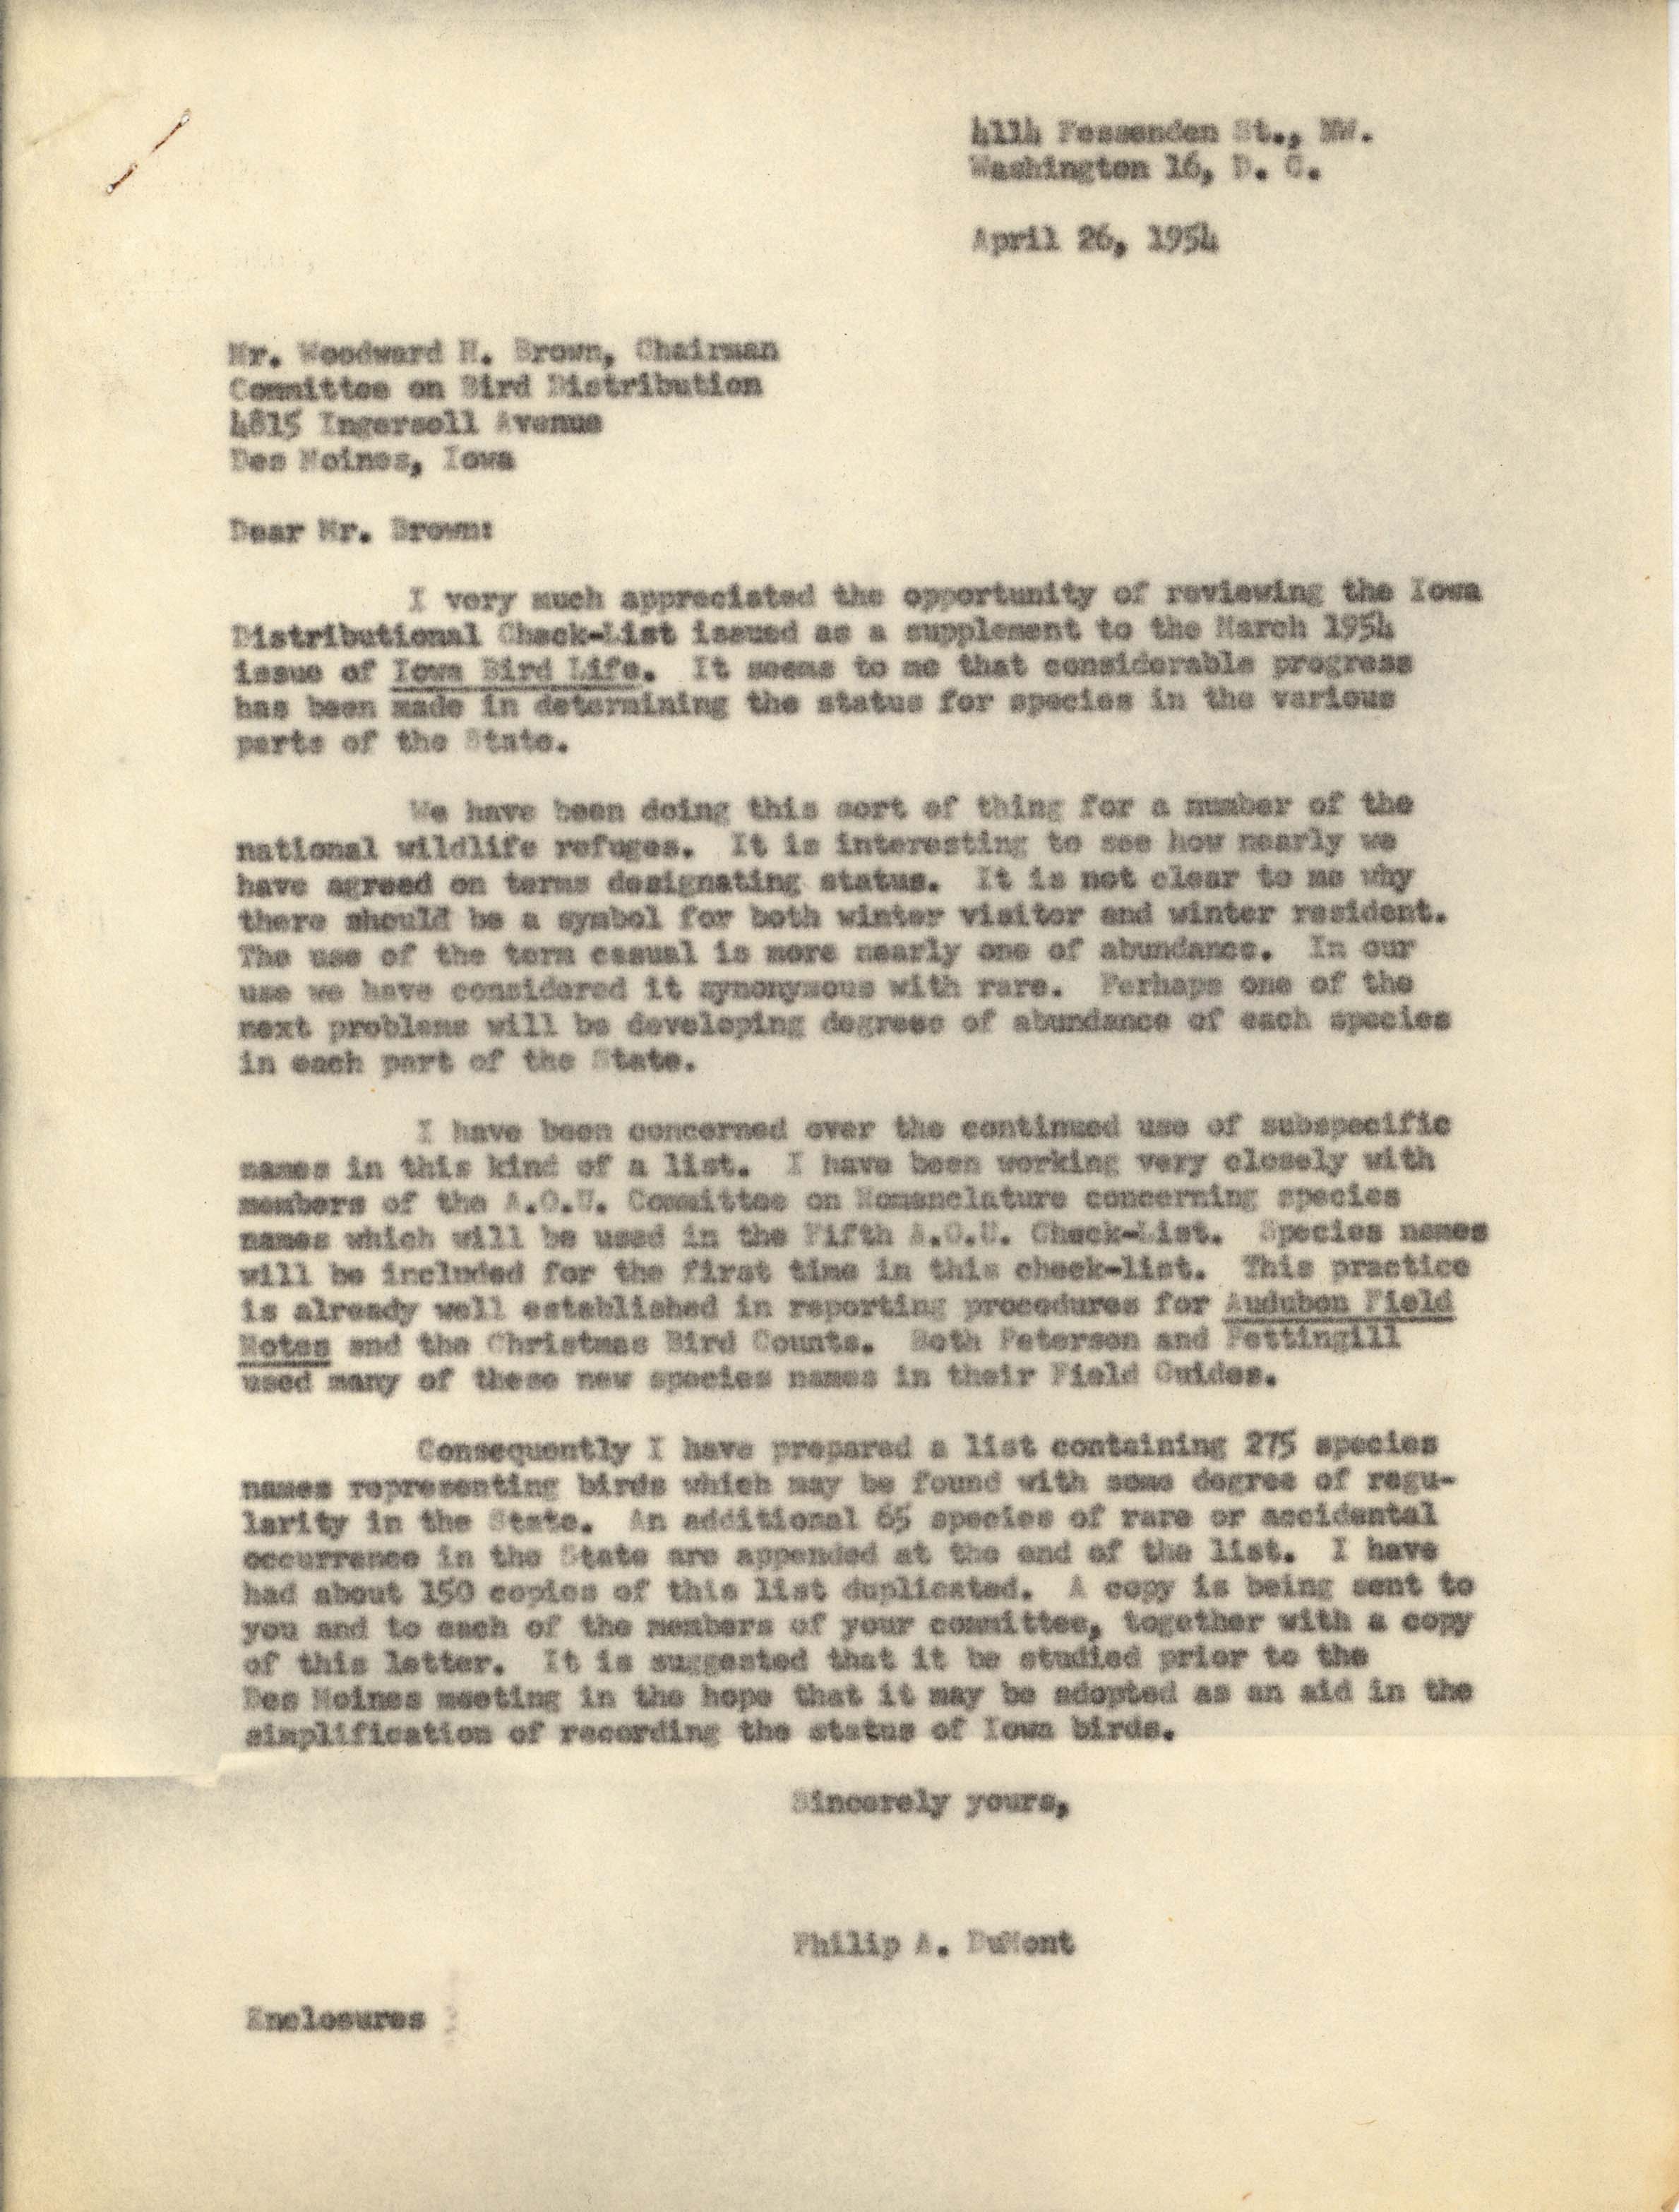 Philip DuMont letter to Woodward Brown regarding Iowa bird checklist, April 26, 1954